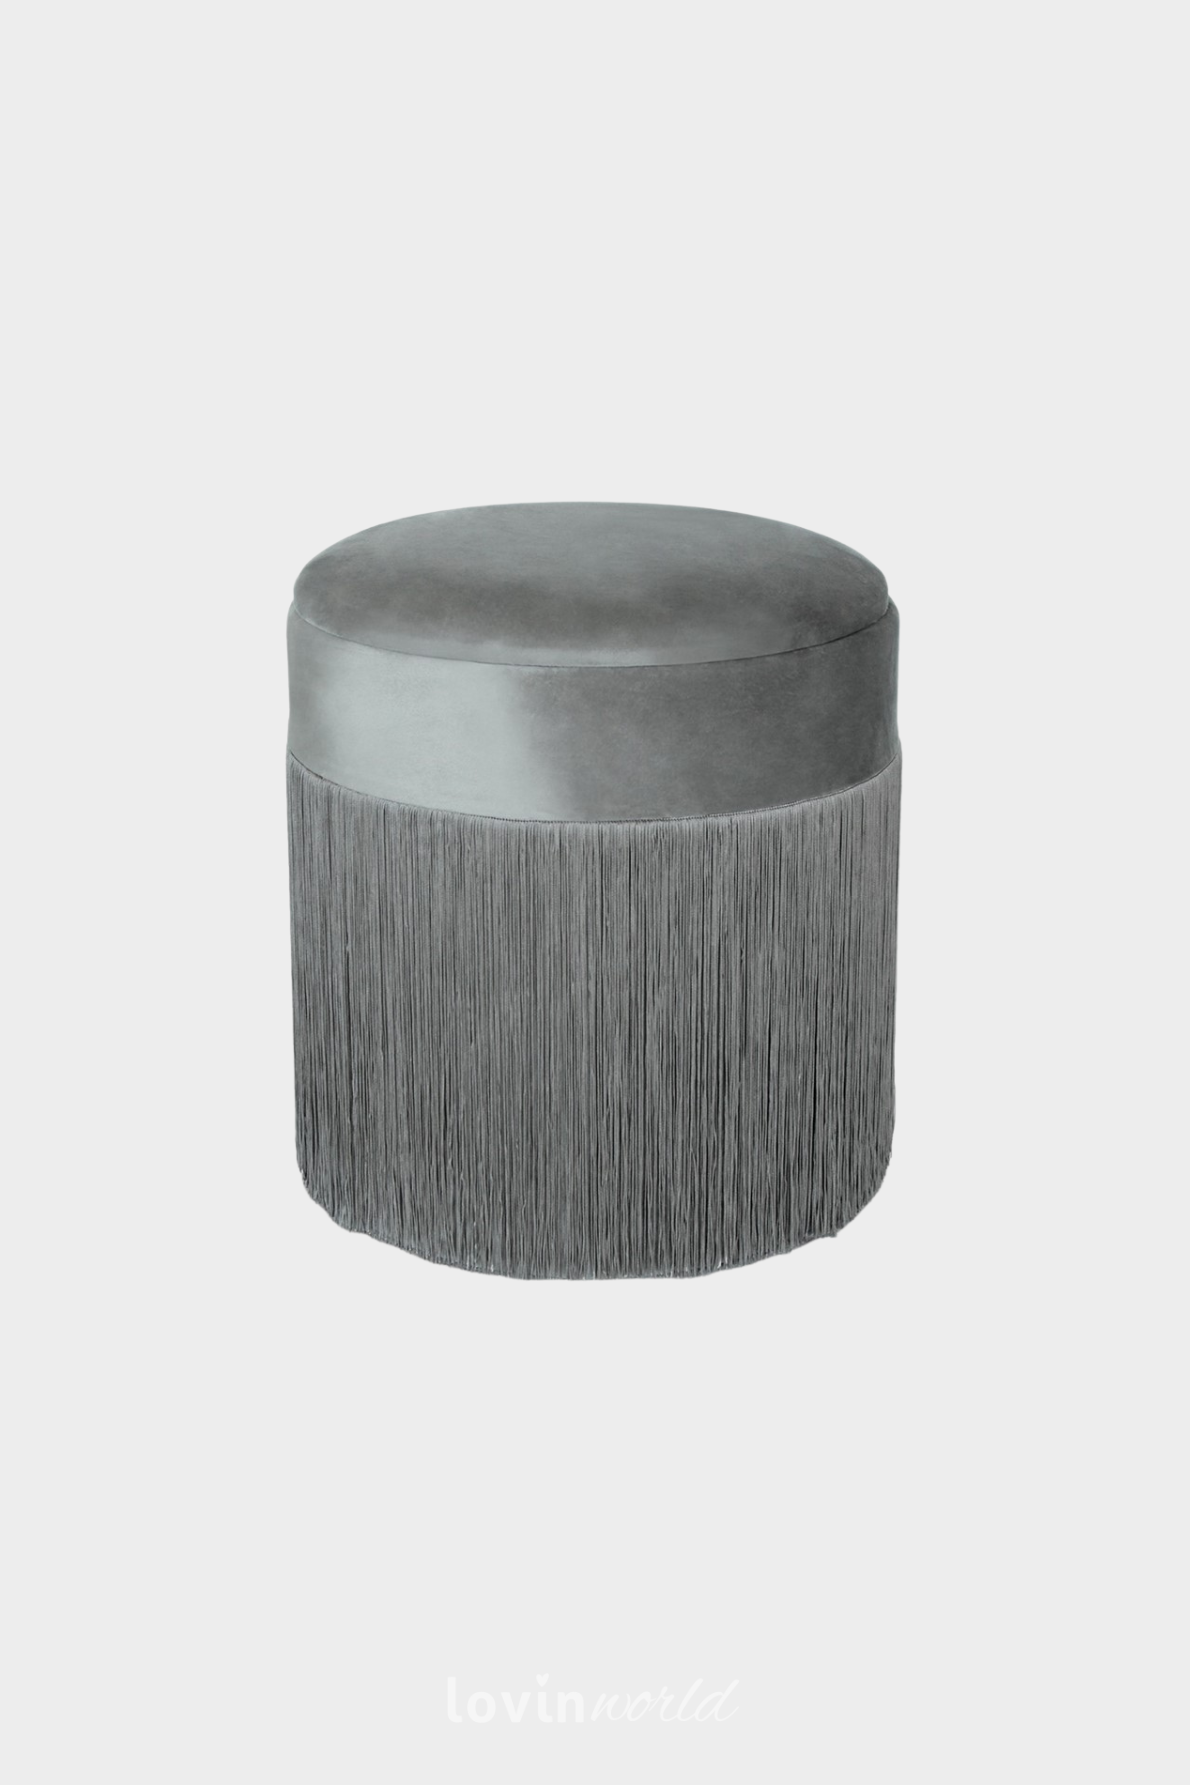 Pouf contenitore Ushi, in colore grigio 40x42 cm.